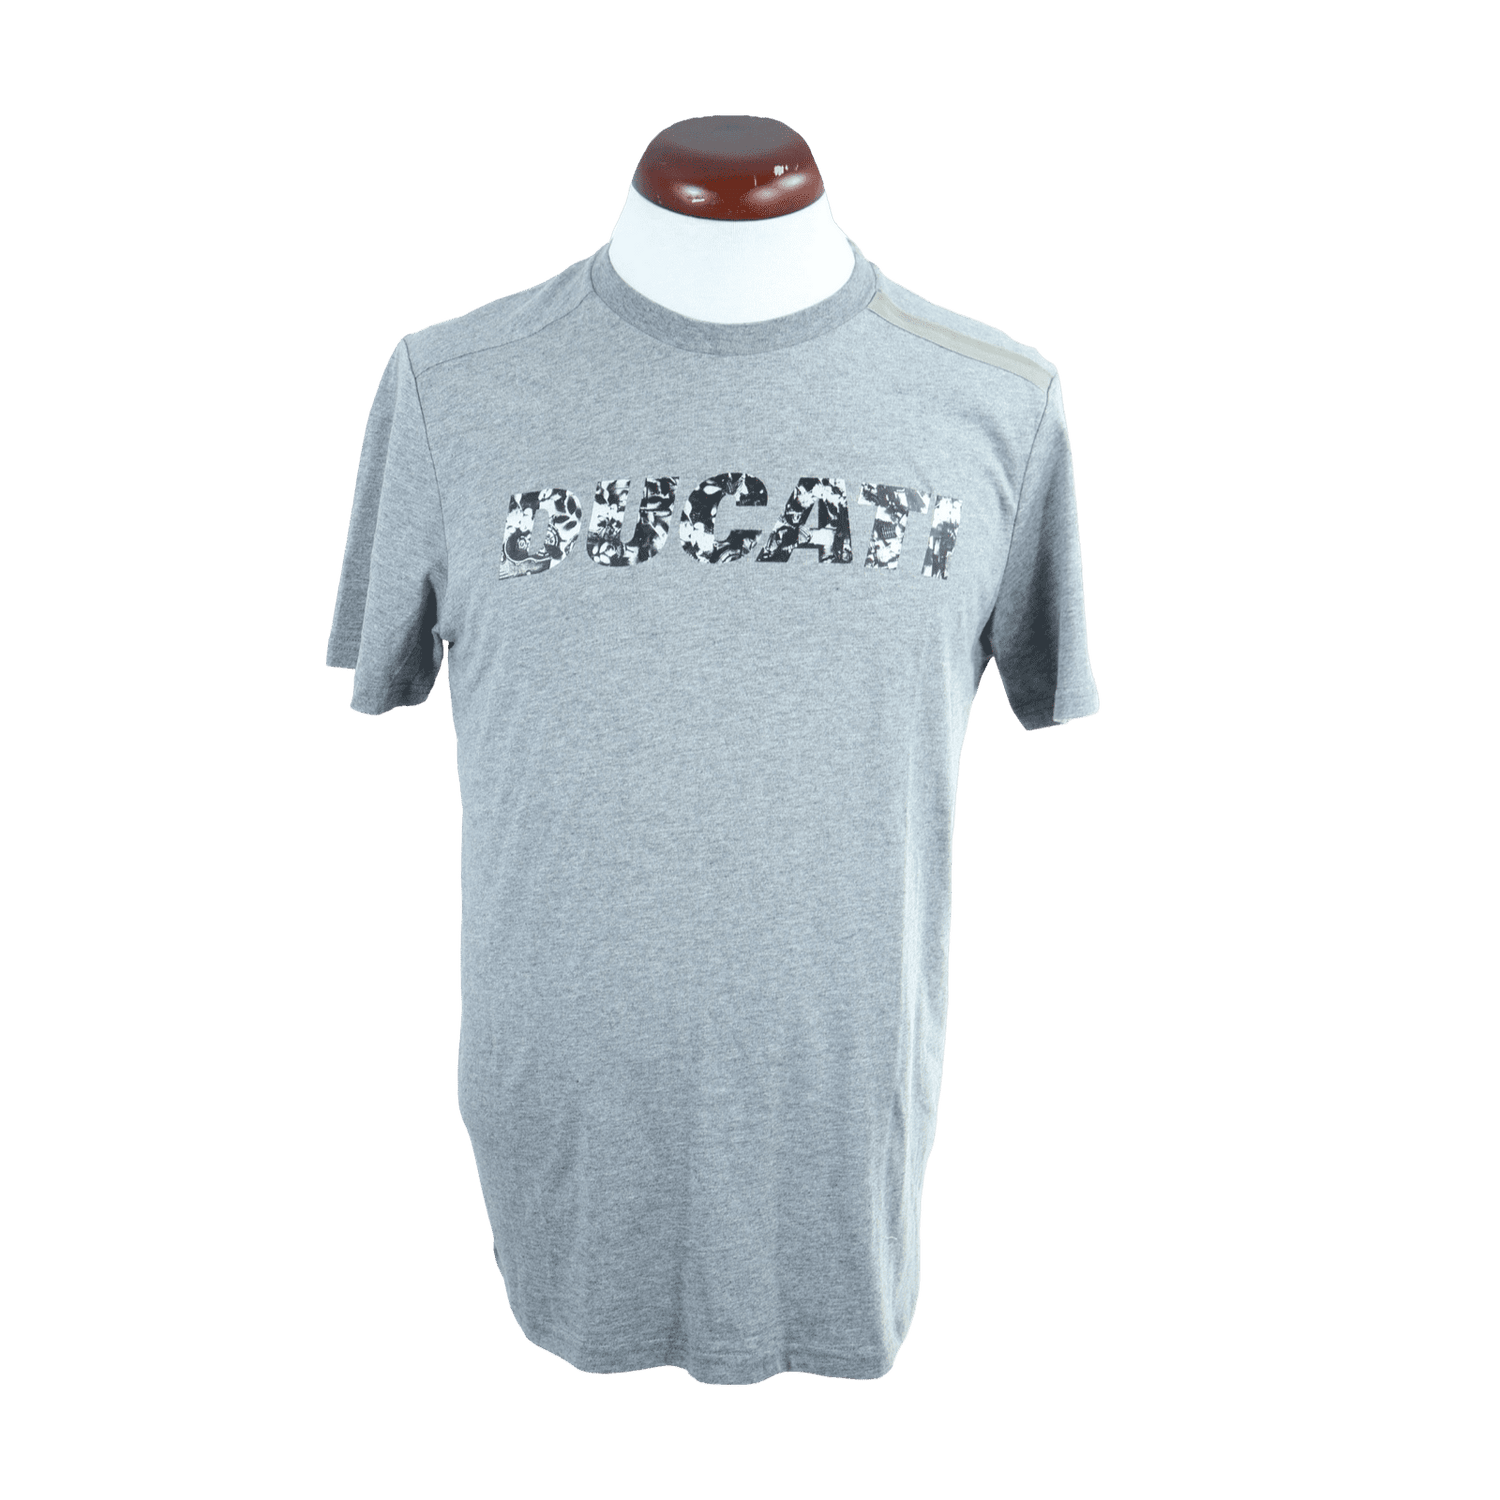 Superiores-masculino-camisetas